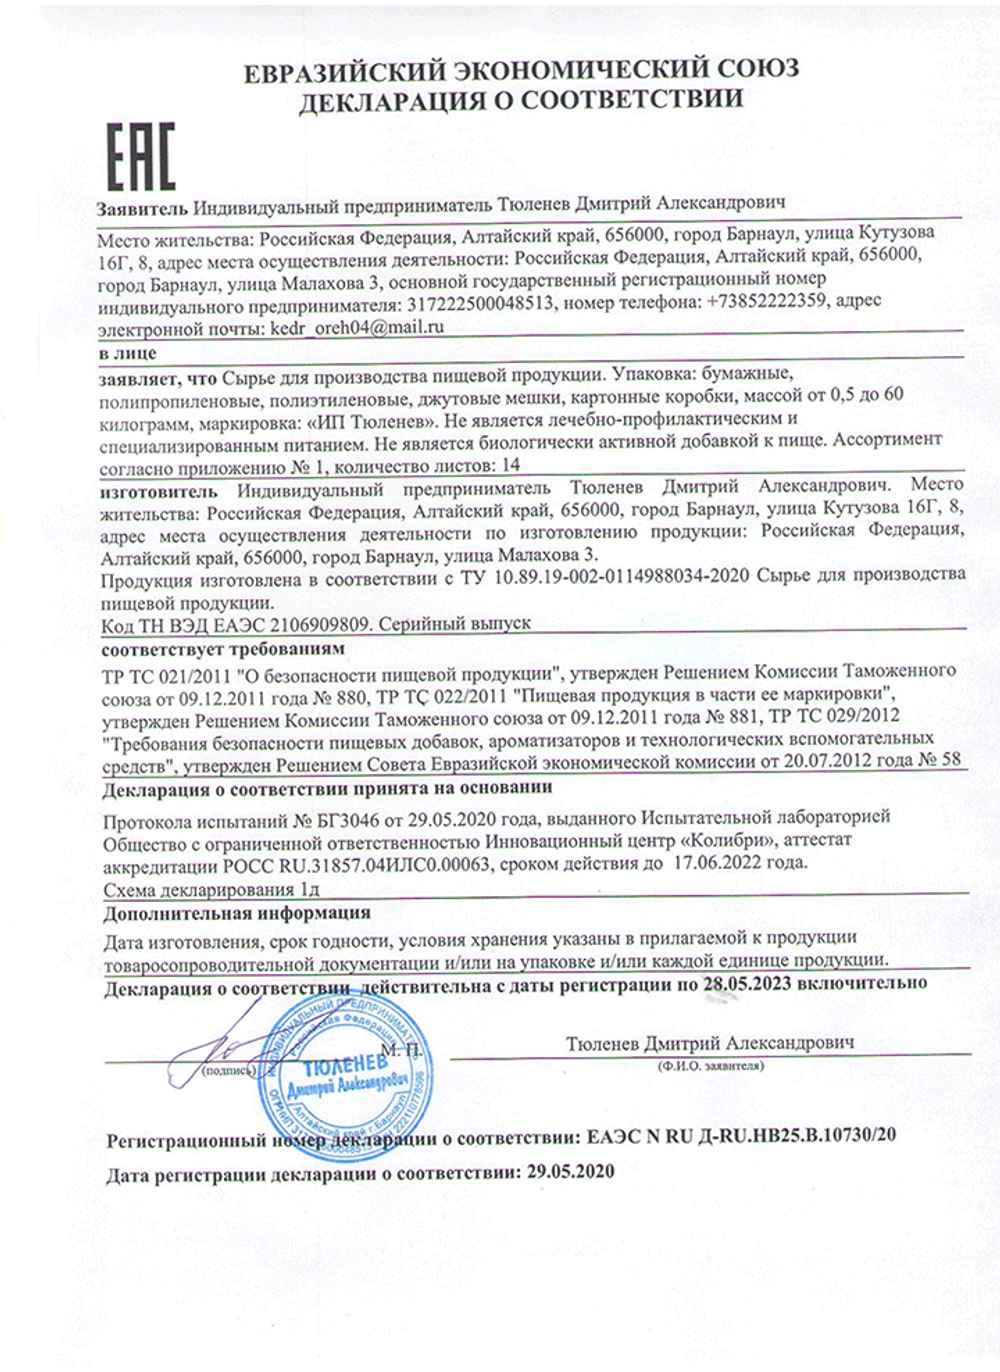 Изображение сертификата соответствия на траву дербенник-adonnis.ru